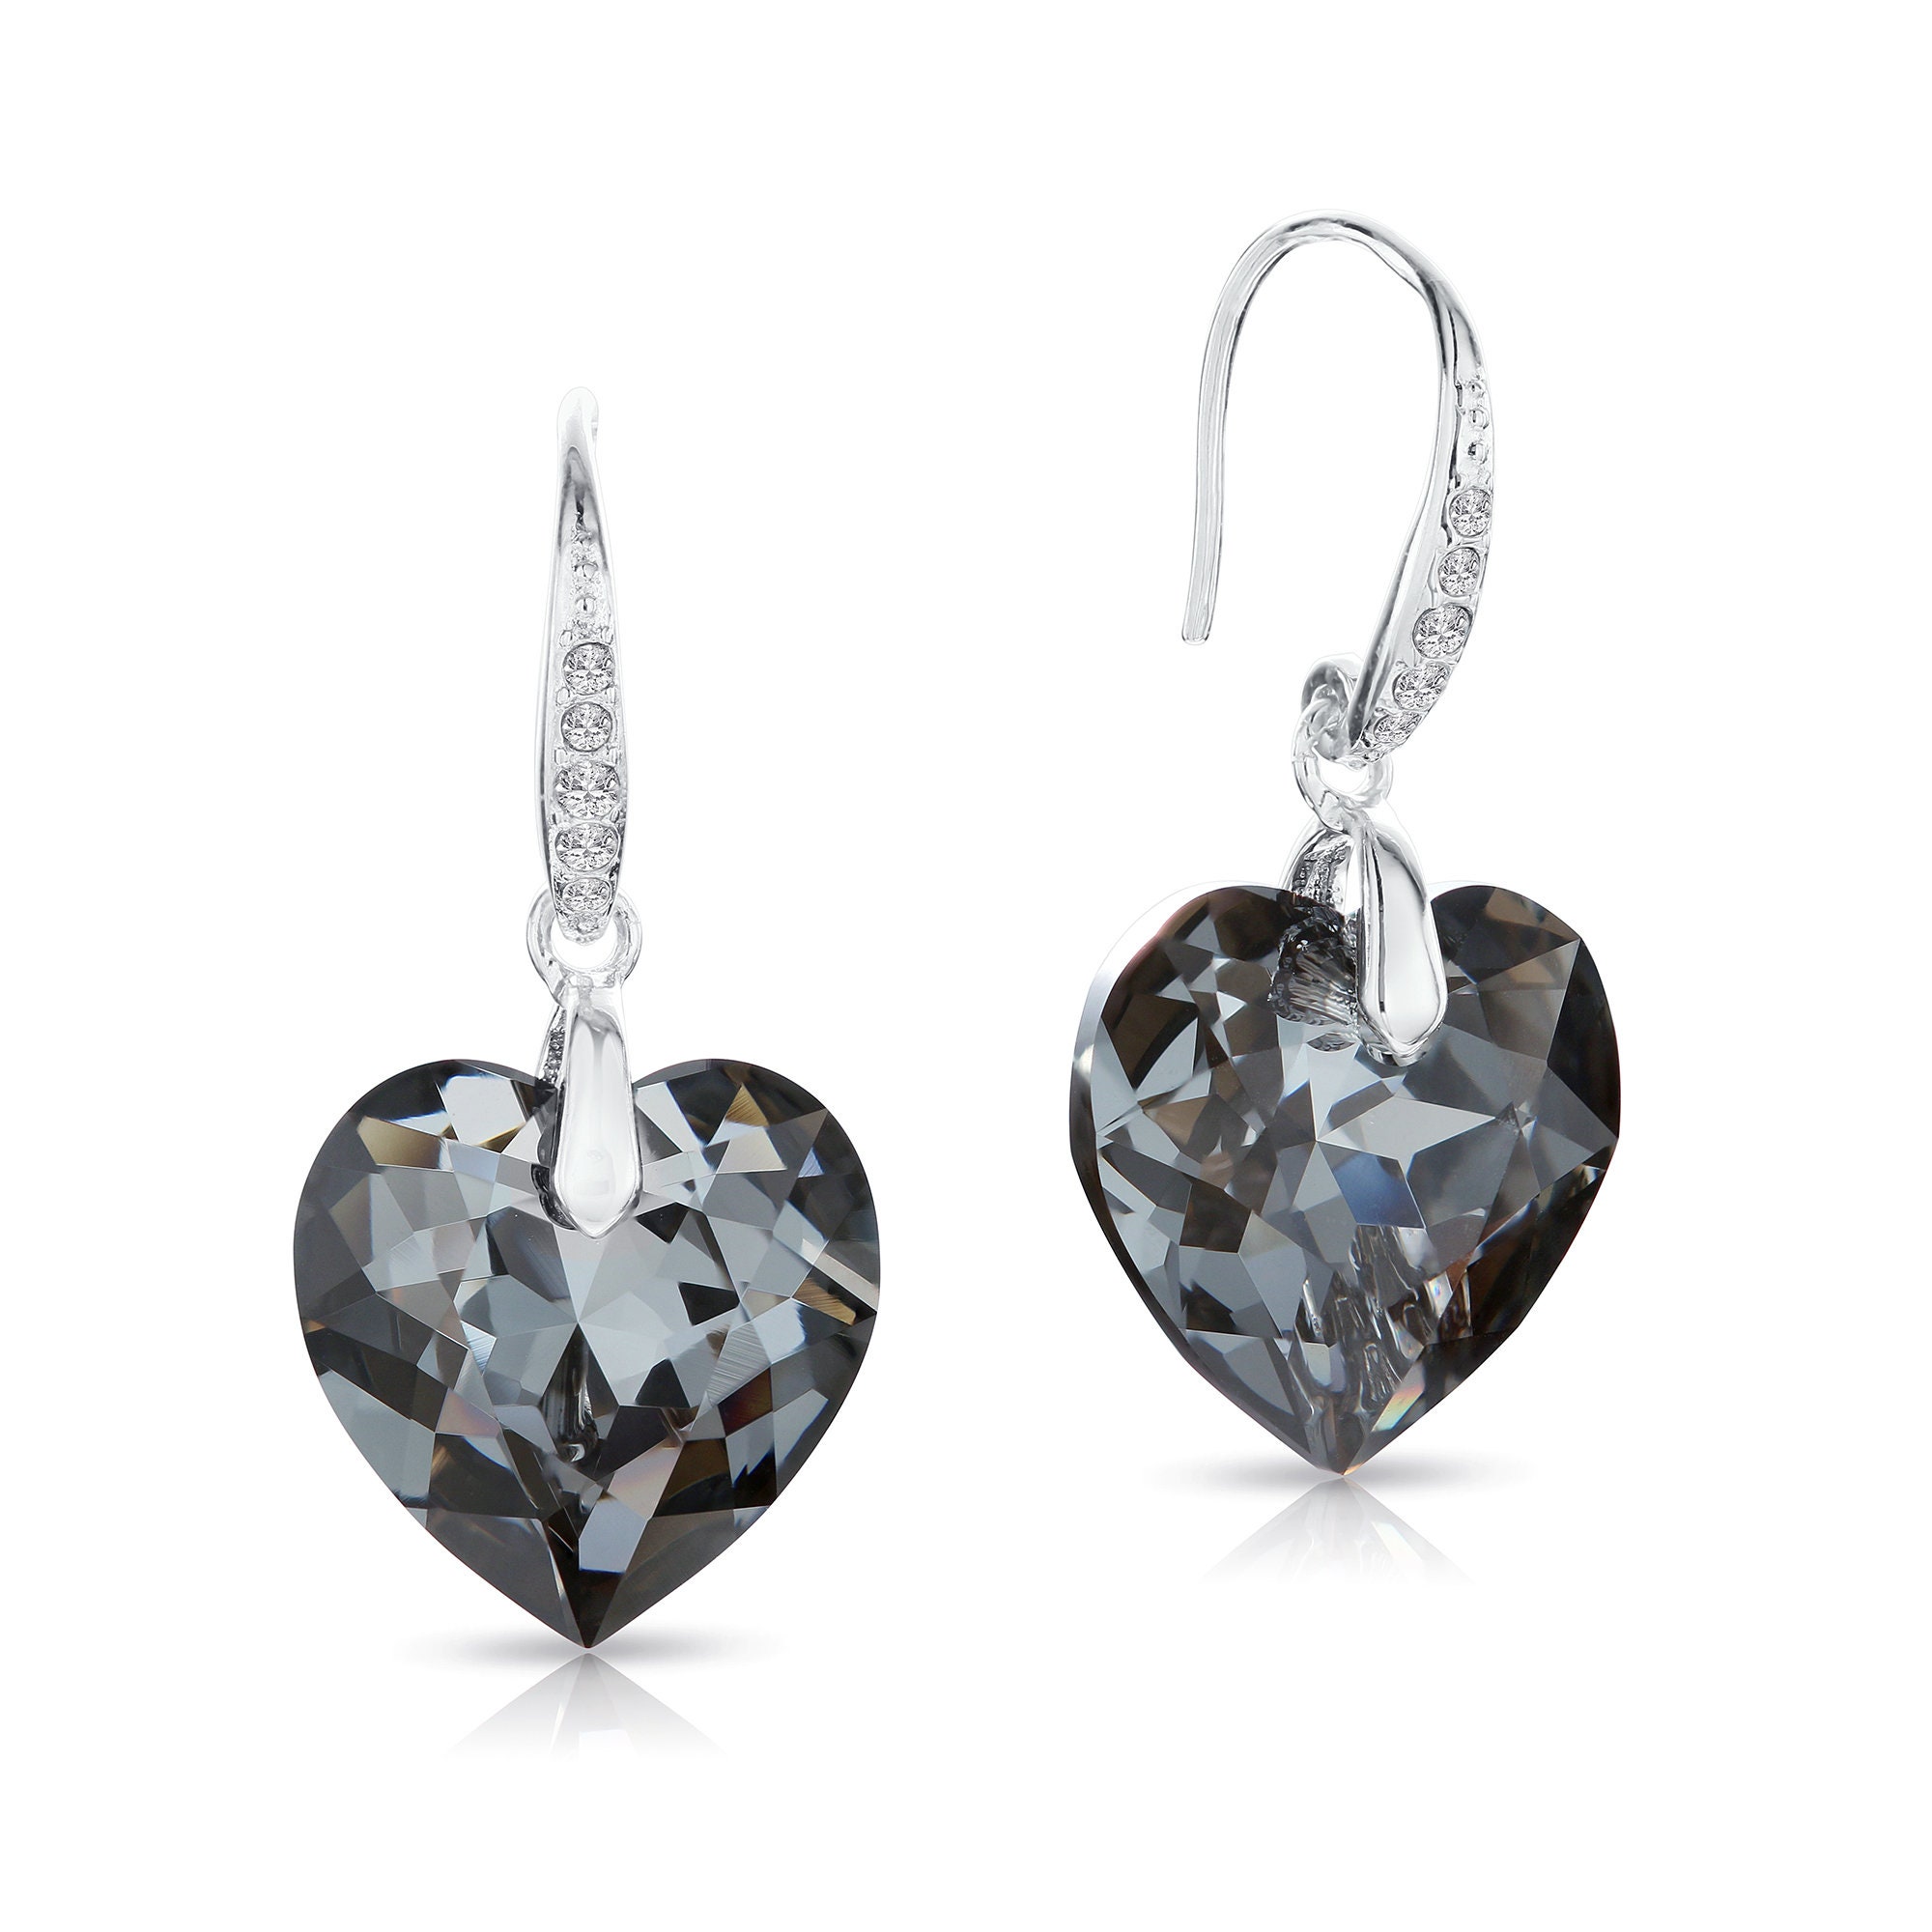 Scarlet 18mm Swarovski crystal heart earrings – Zipessa